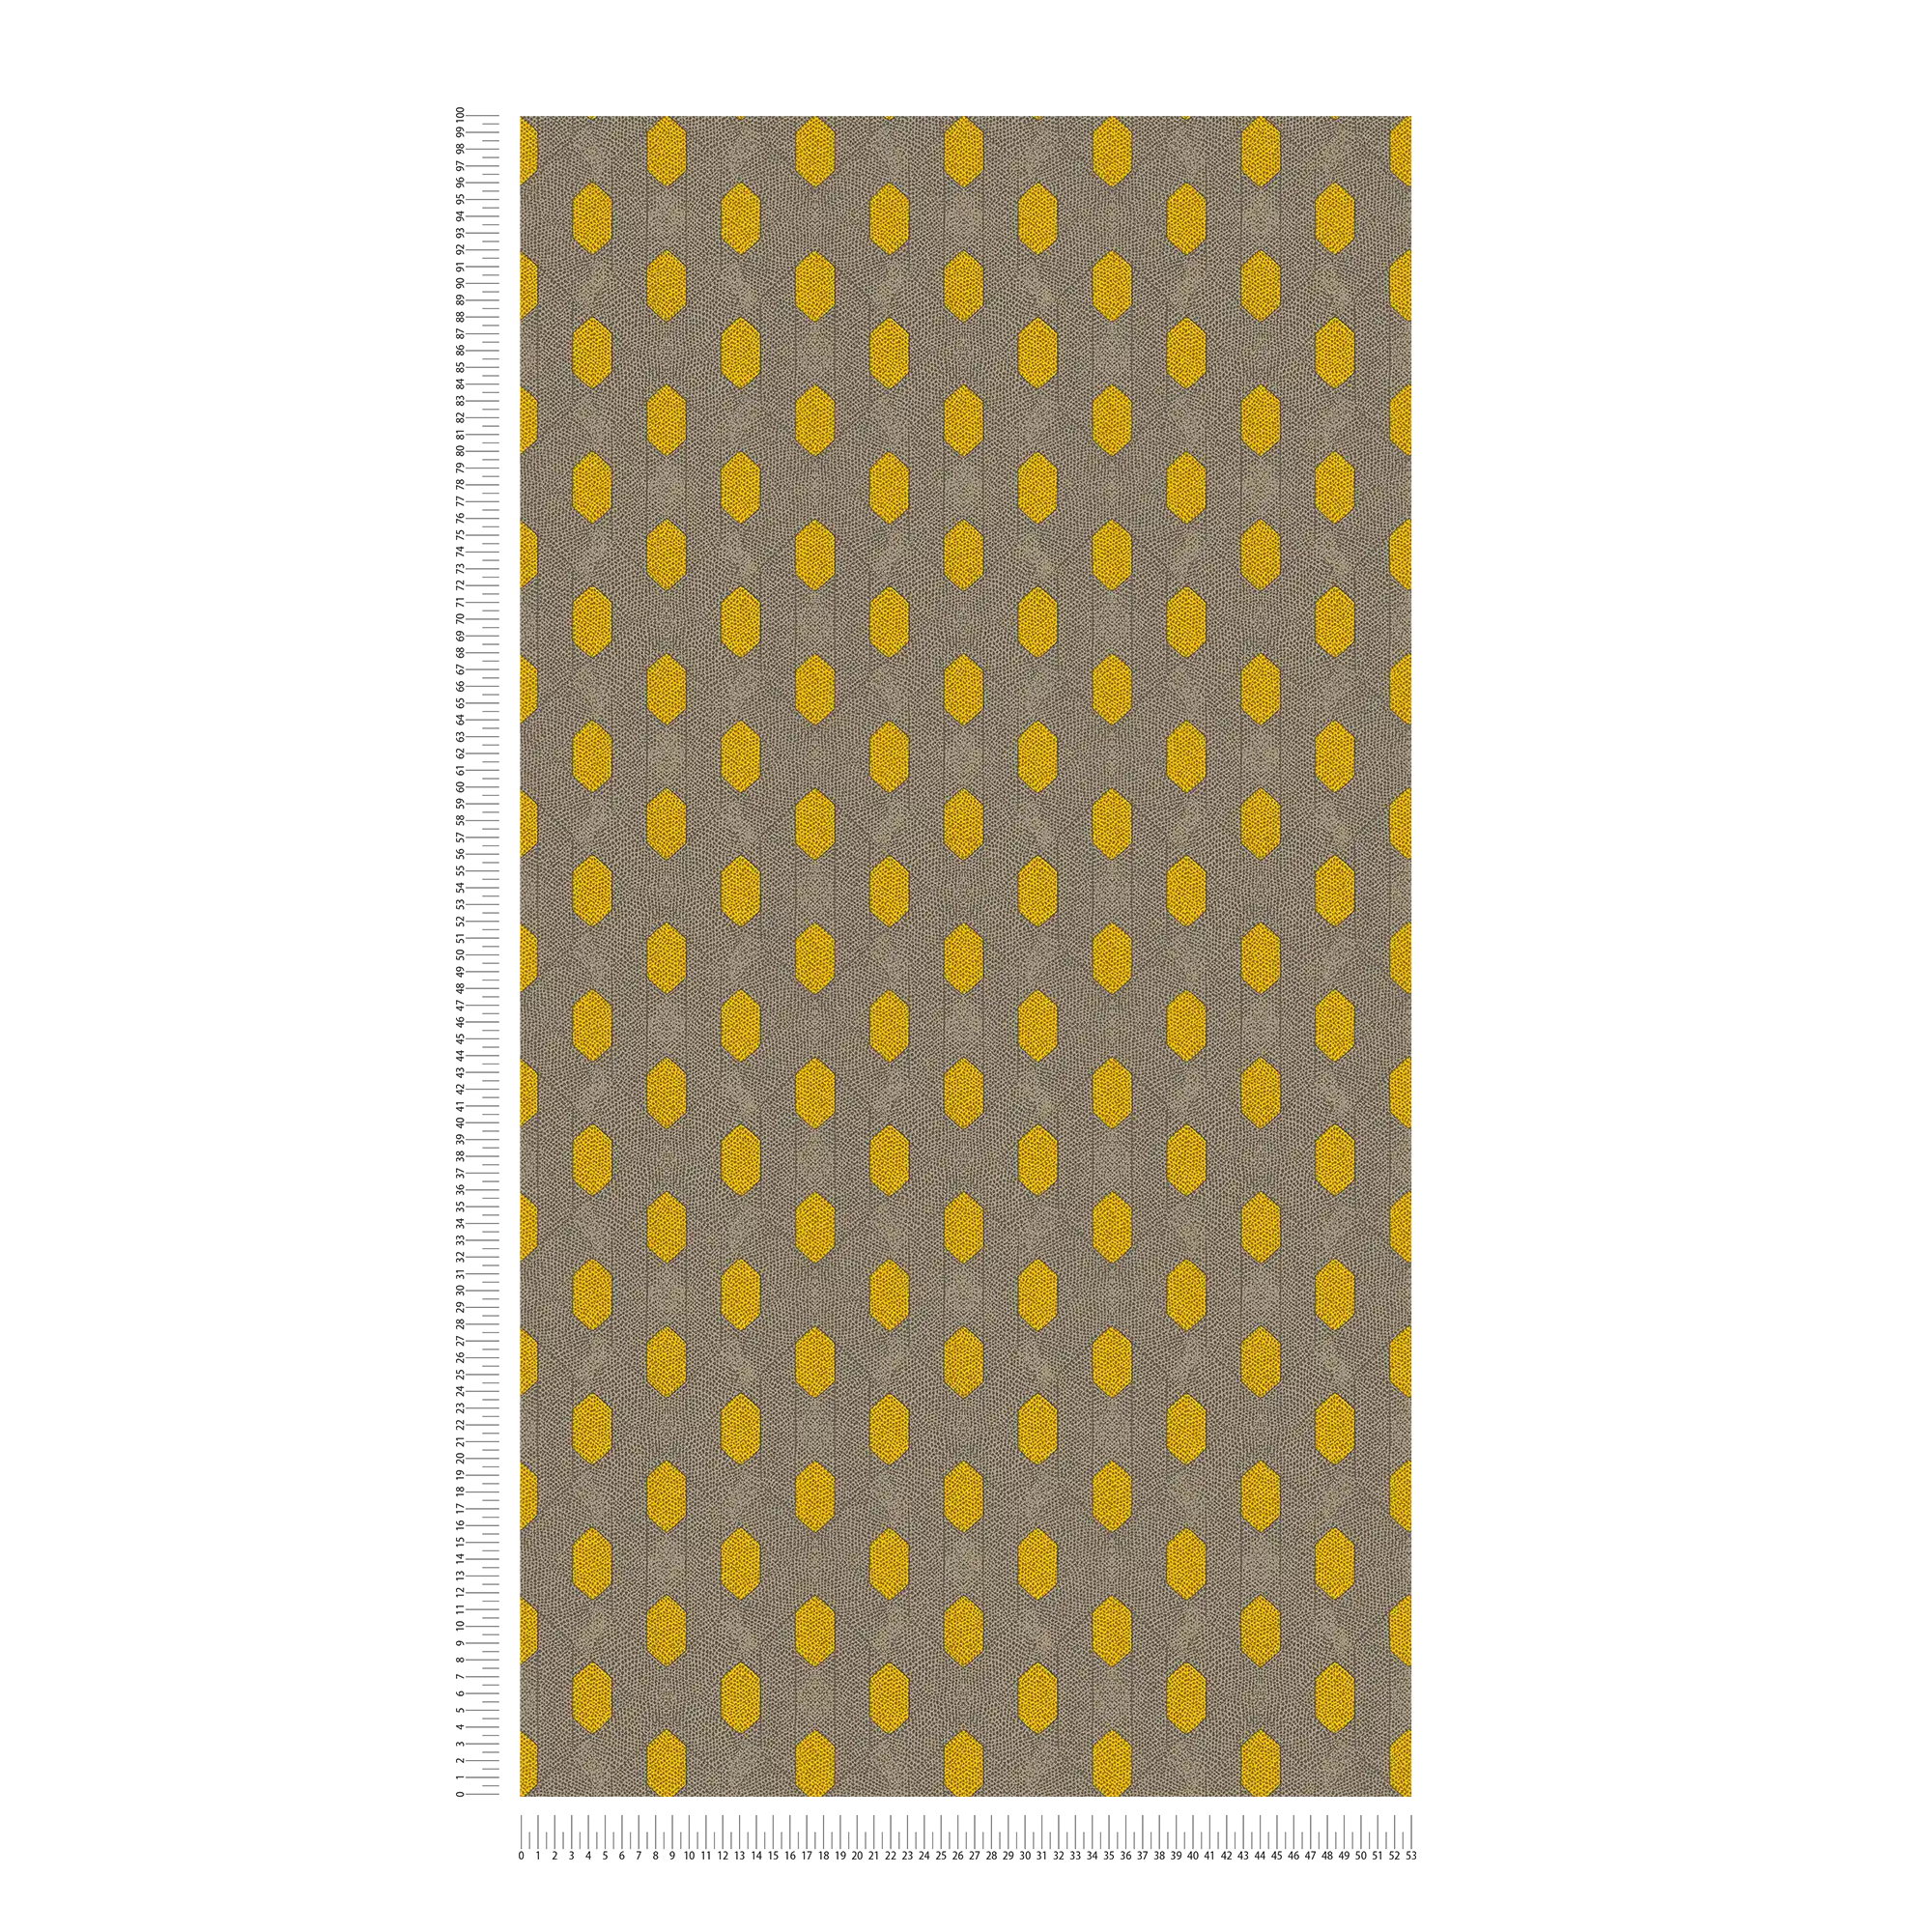             Papel pintado no tejido con motivos geométricos de puntos - amarillo, gris, marrón
        